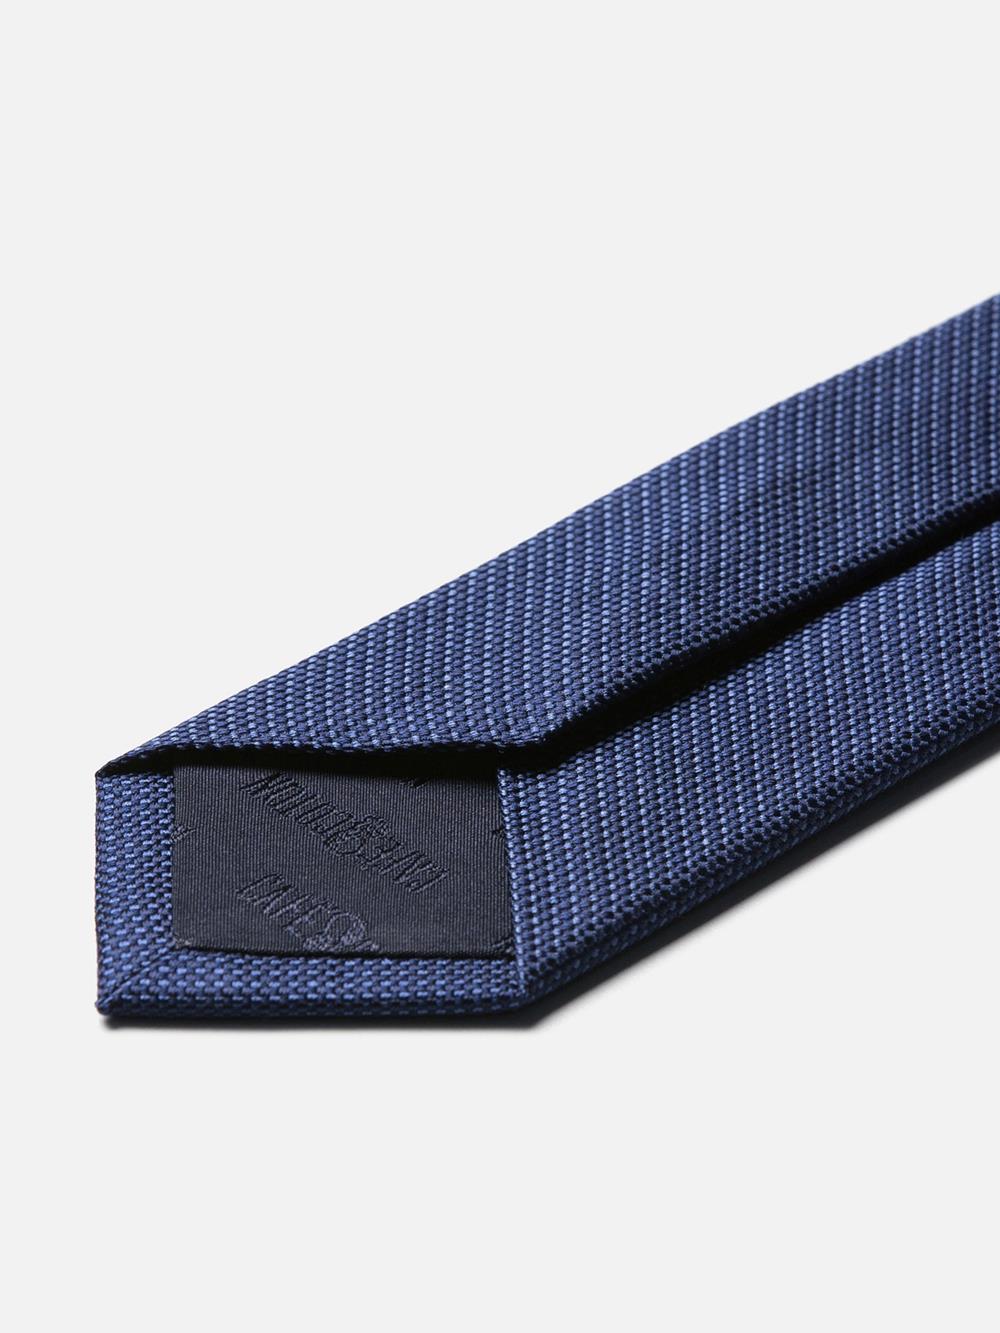 Cravate fine en soie marine natté bleu